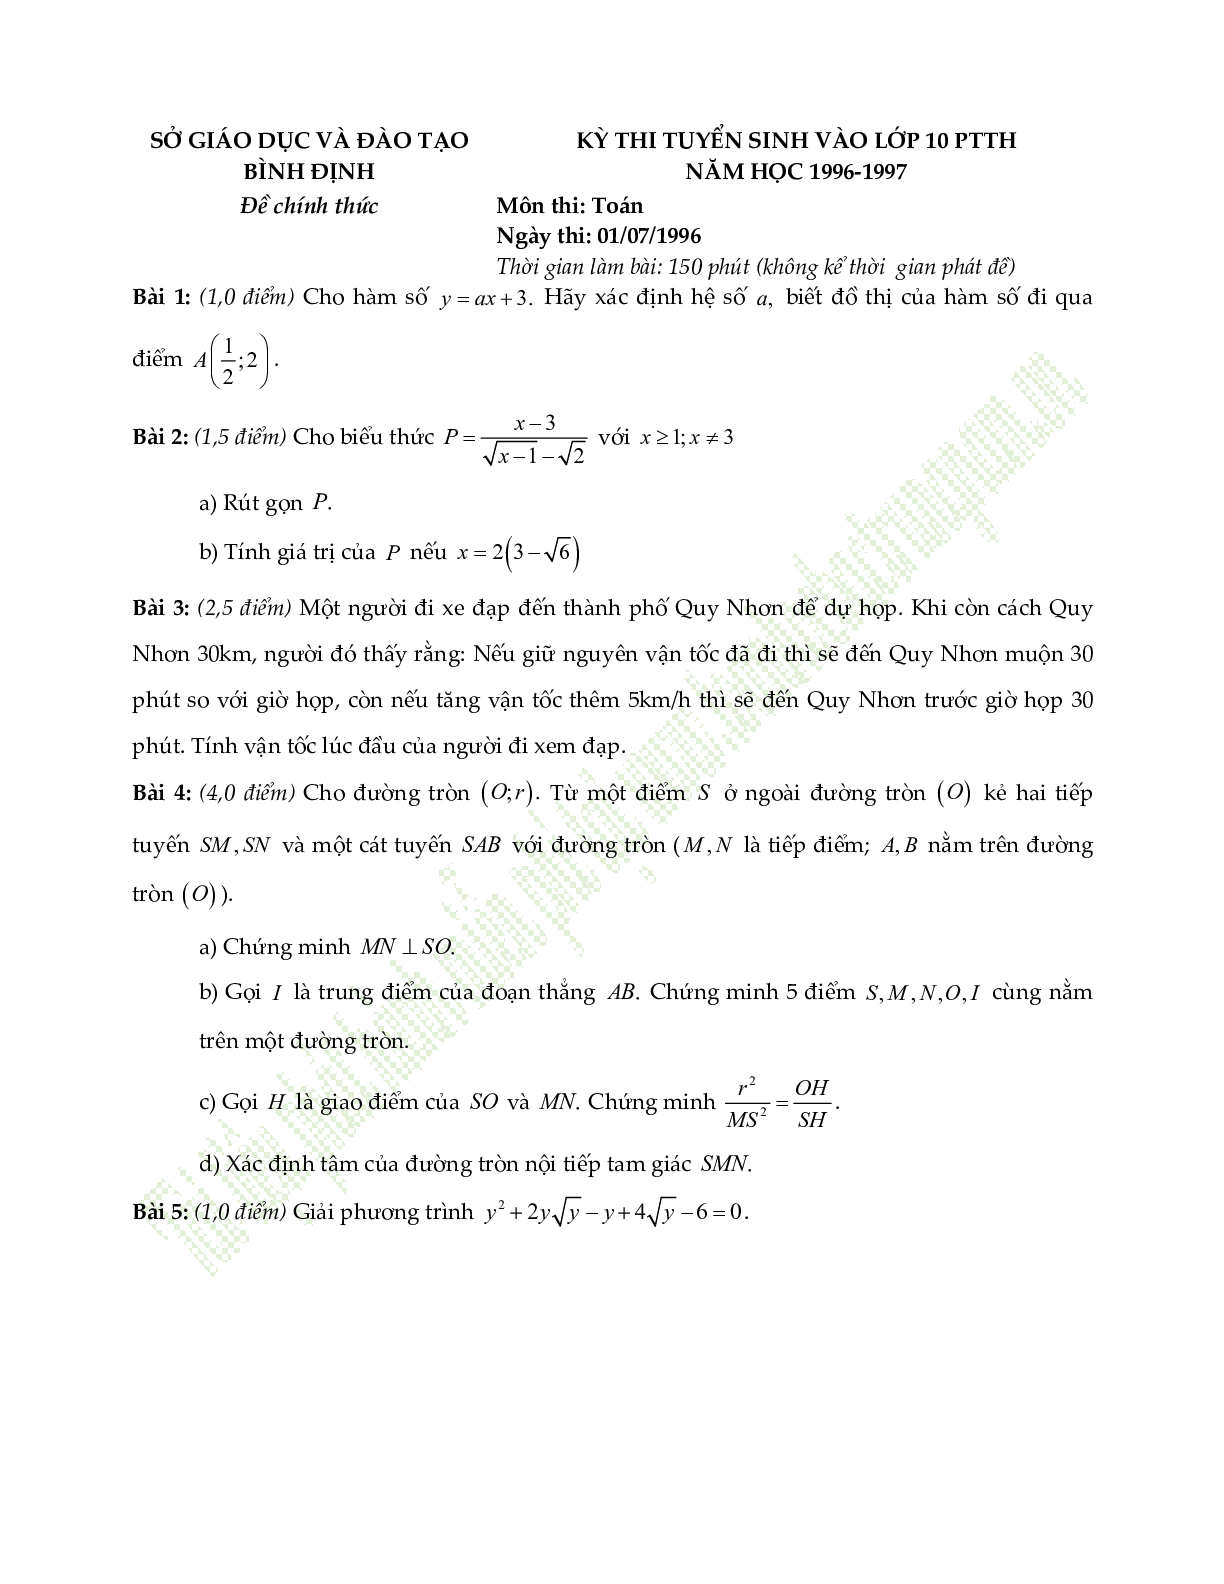 Đề thi vào lớp 10 môn toán tỉnh Bình Định qua các năm (trang 5)